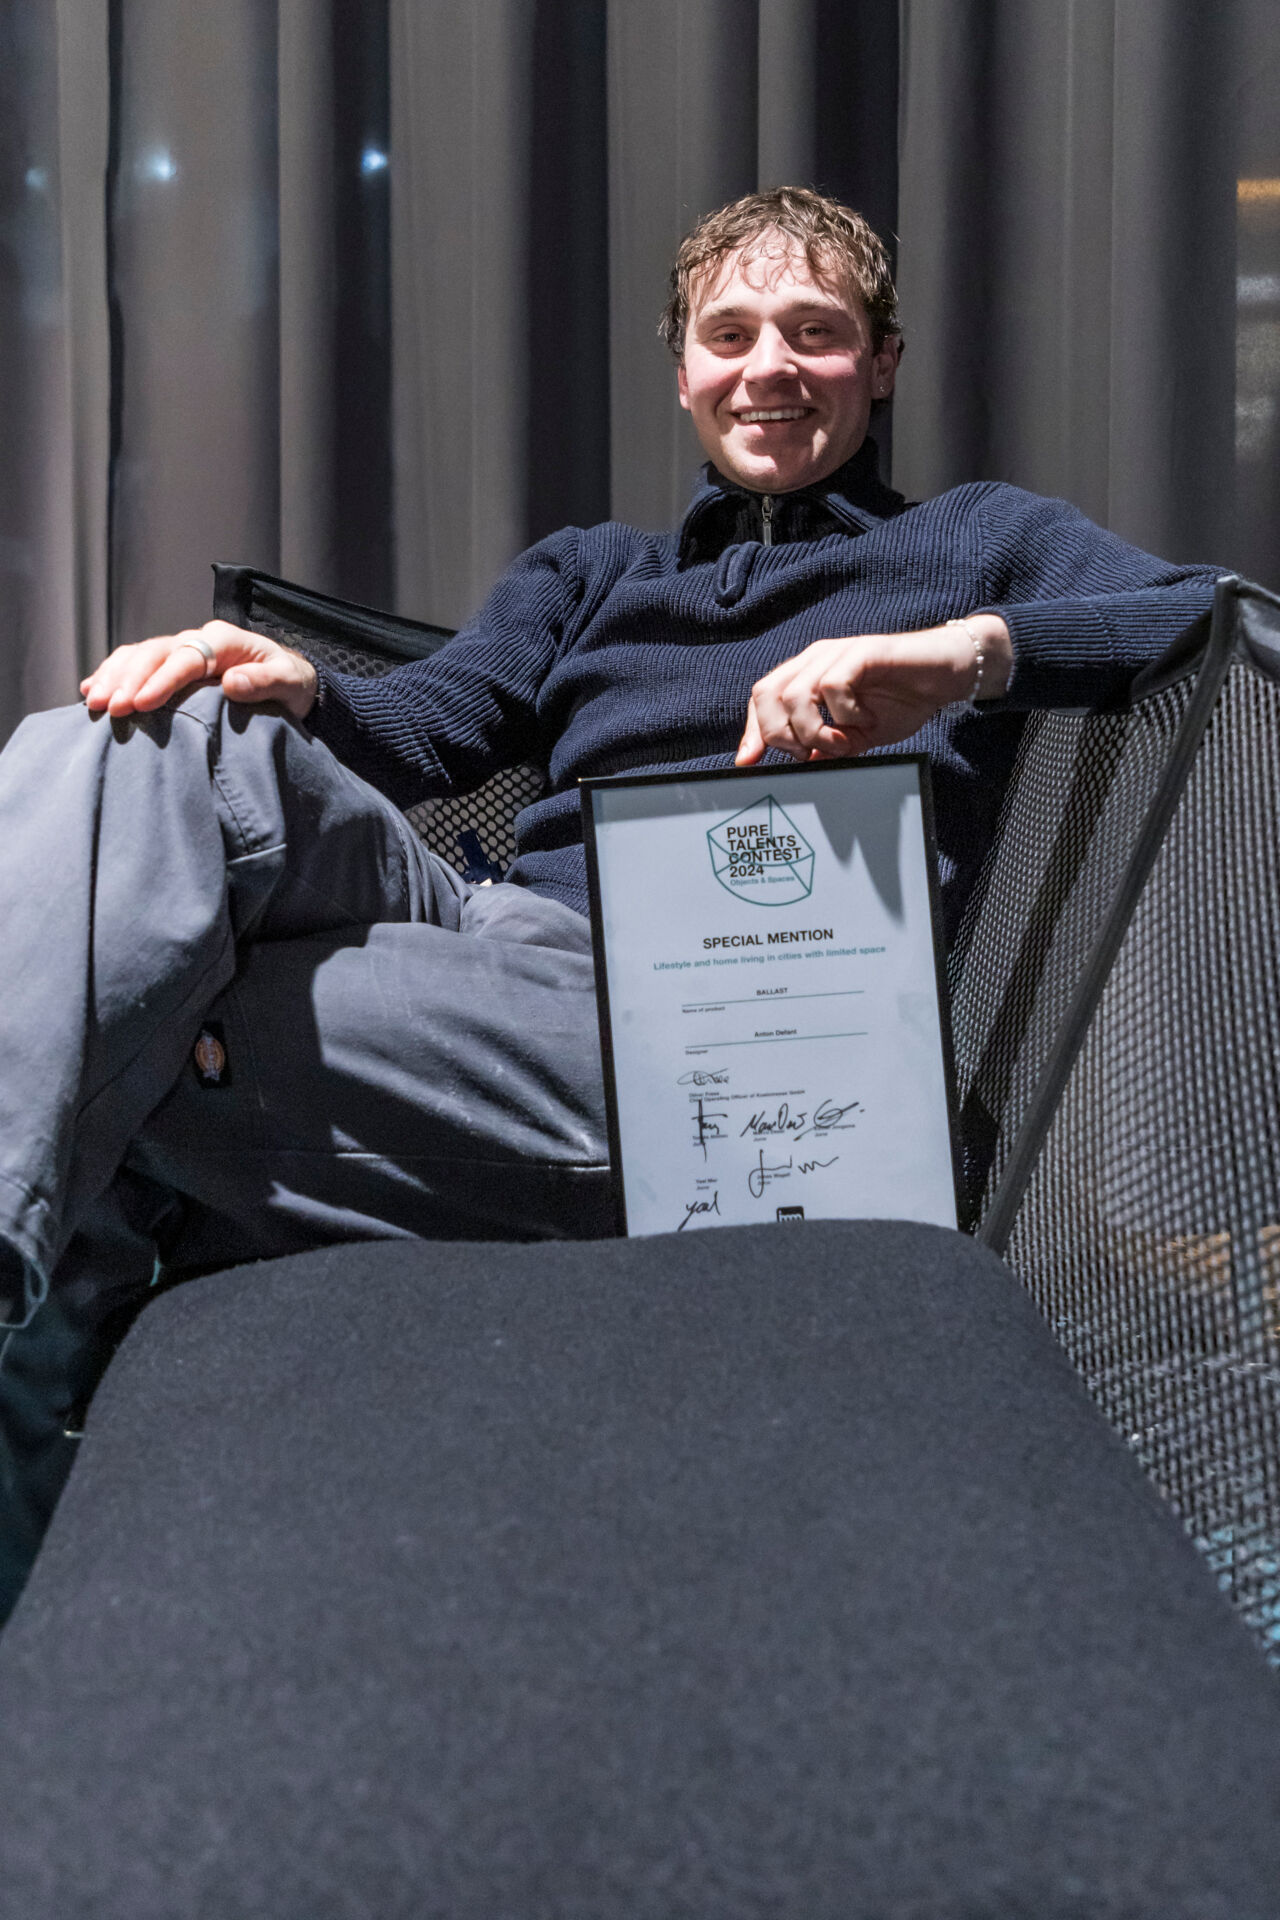 Anton Defant auf seinem Sofa "Balast" mit Urkunde des Pure Talent Contests